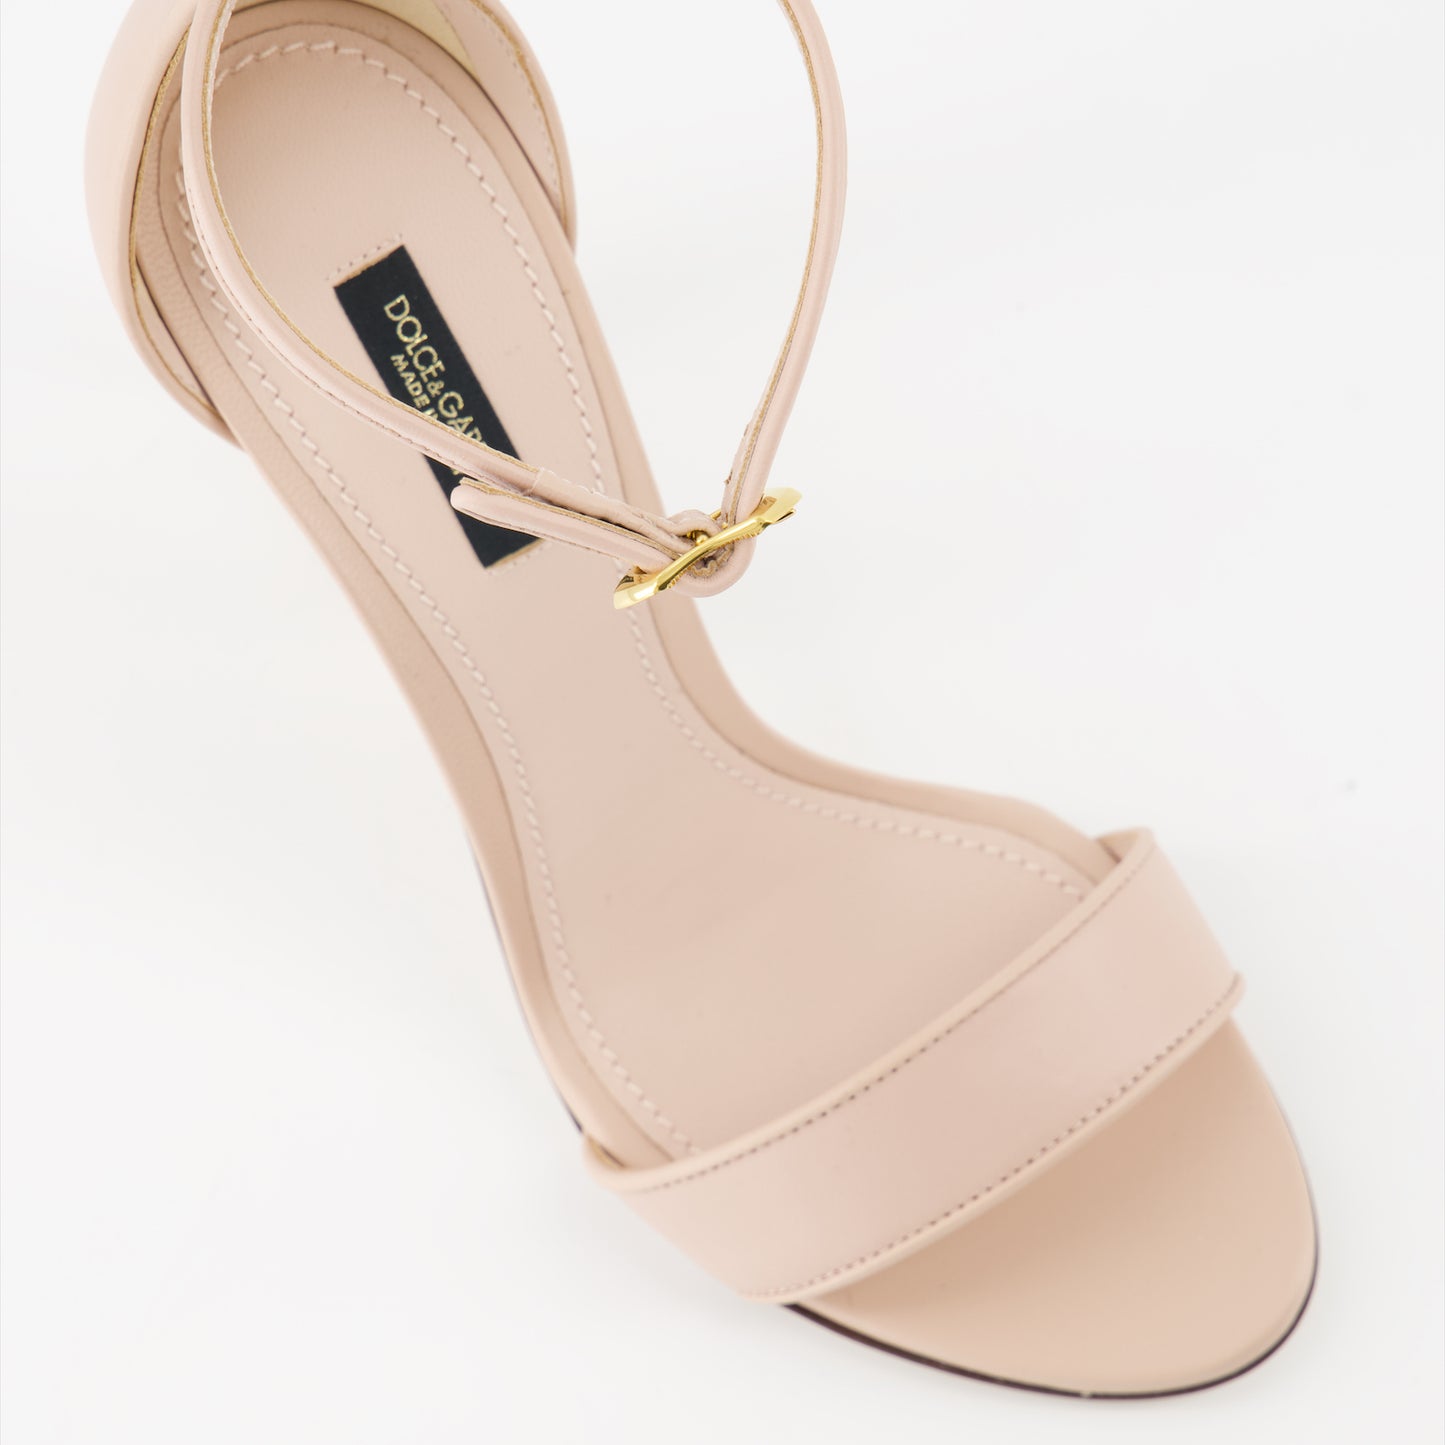 DG Baroque heeled sandals